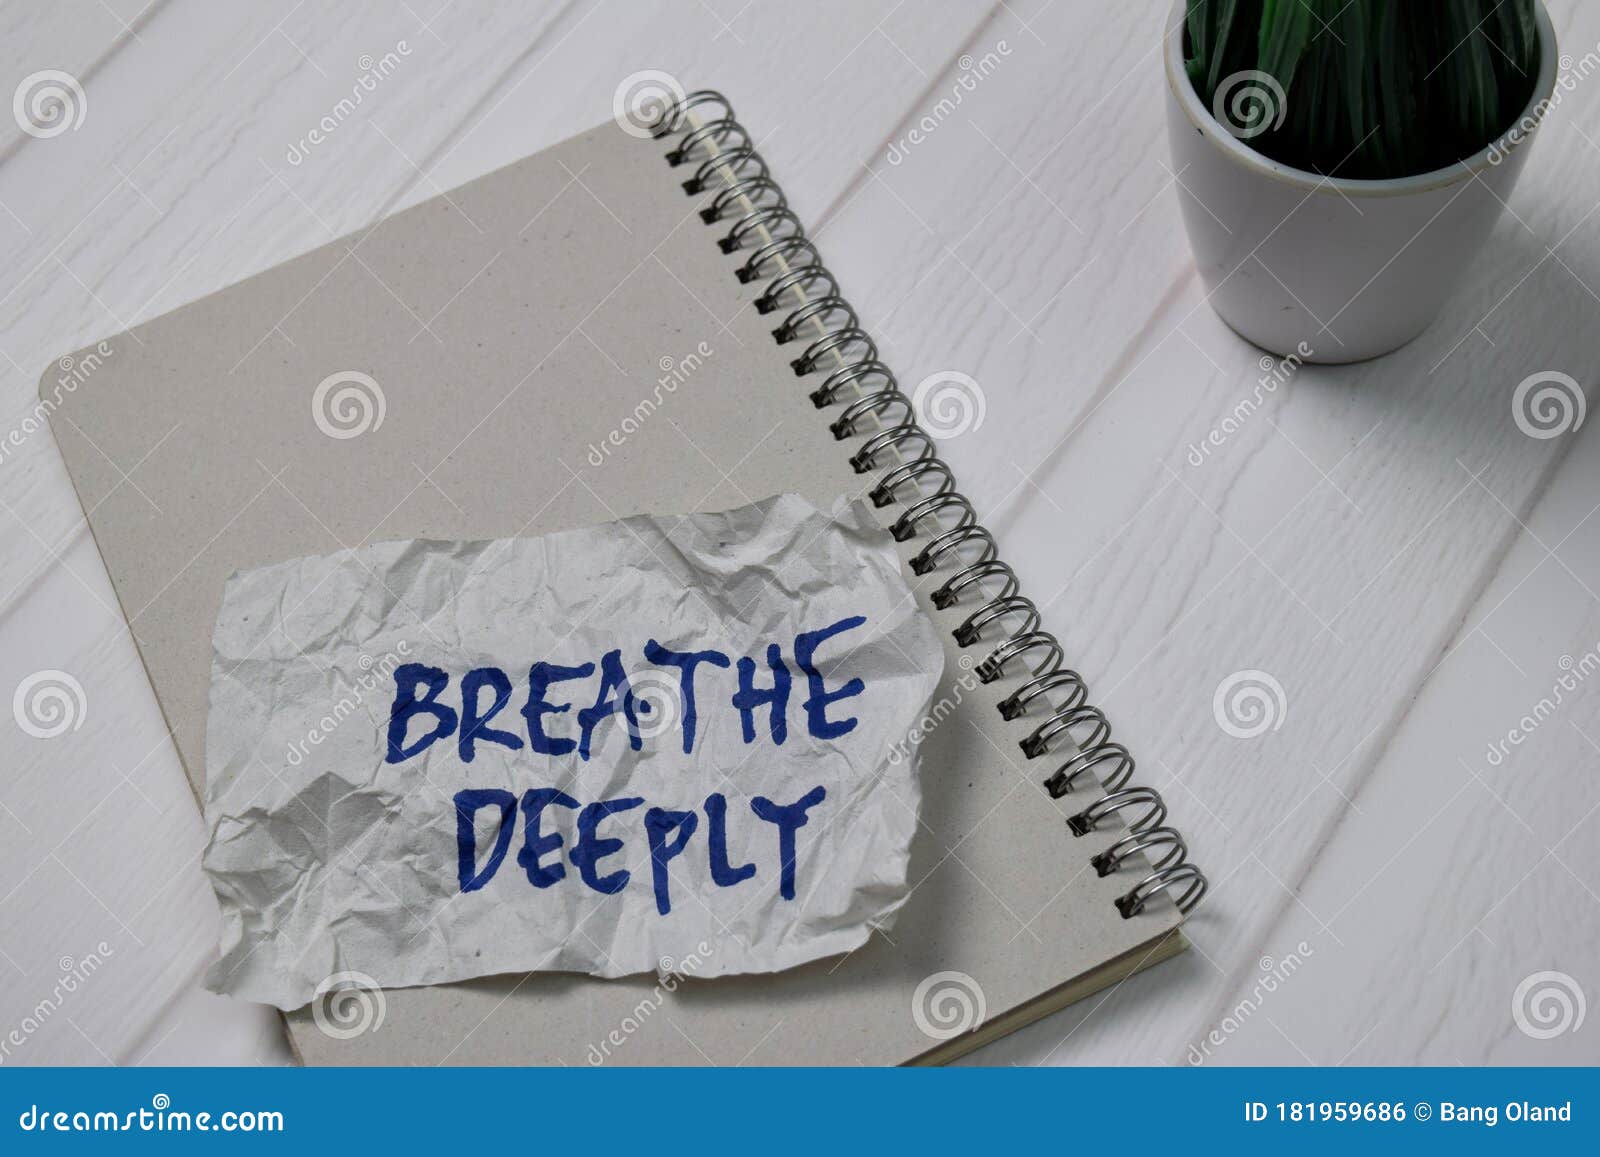 breathe deeply write on sticky notes  on office desk